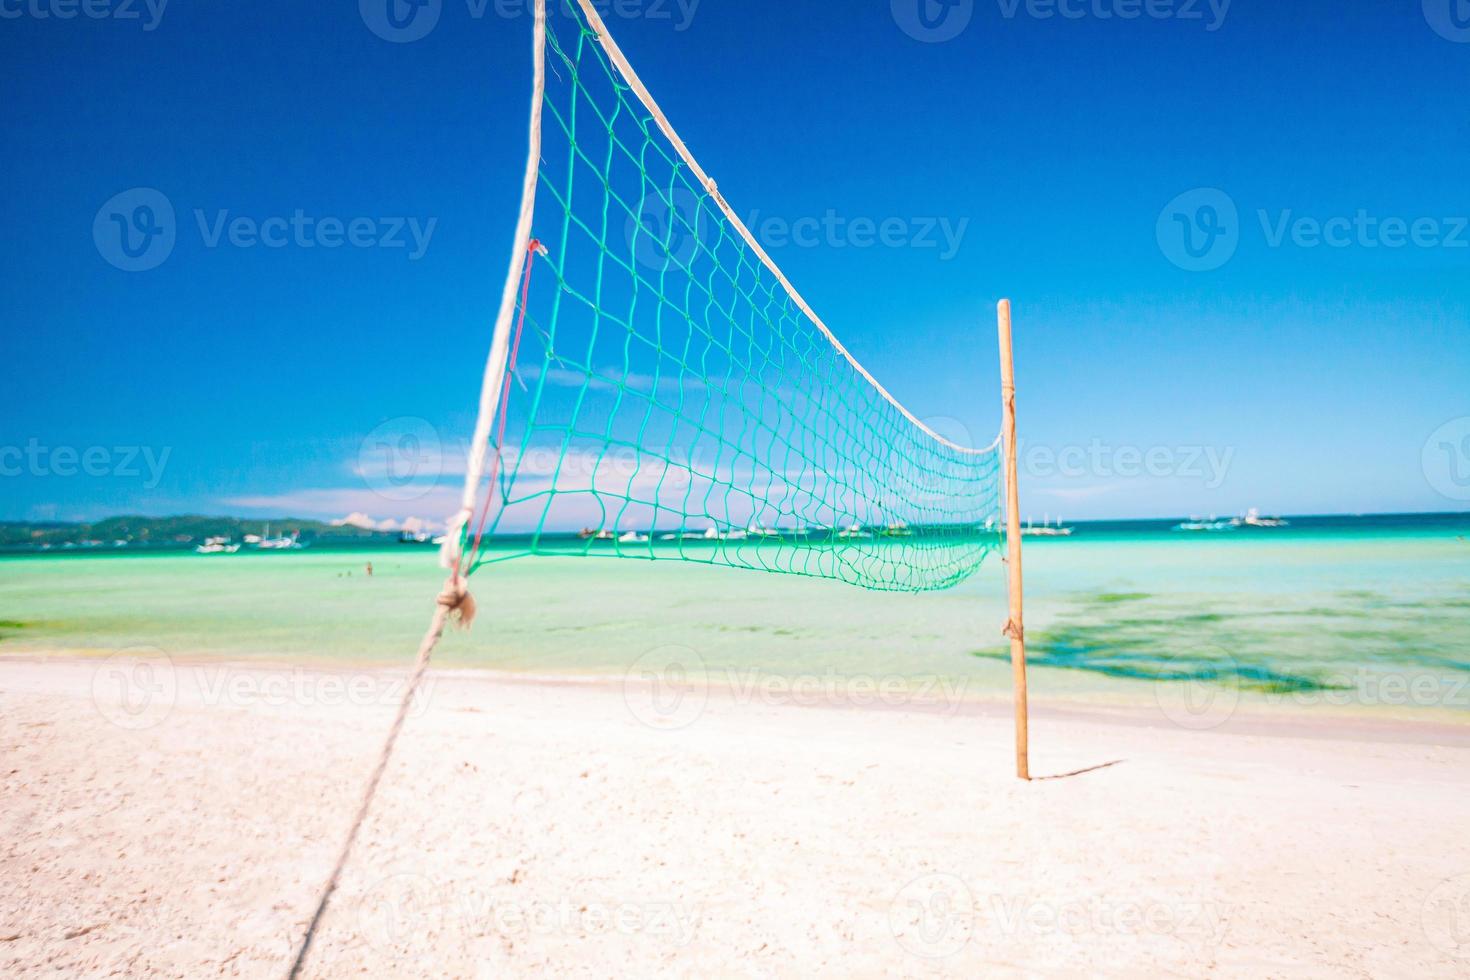 rede de vôlei closeup na praia exótica tropical vazia foto